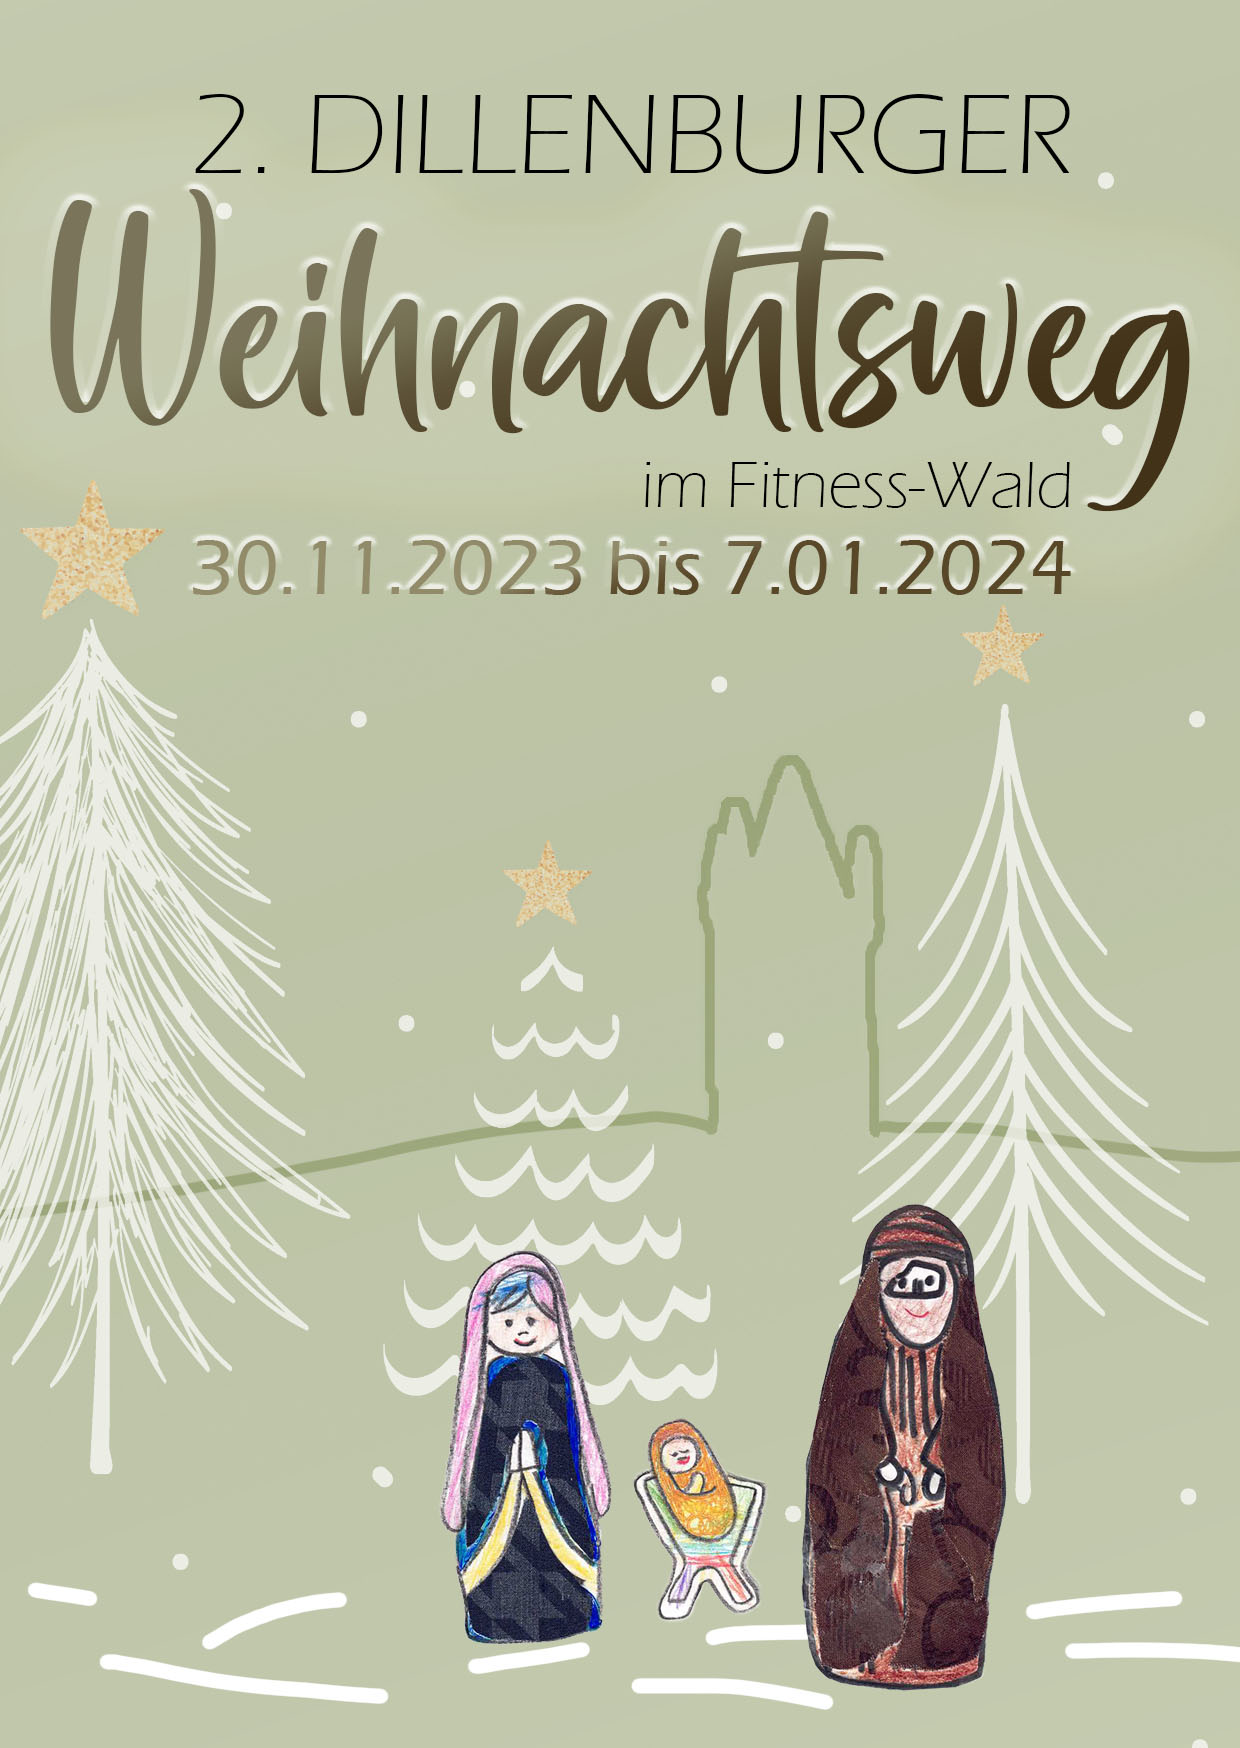 Hinweis auf den 2. Dillenburger Weihnachtsweg. Mit Klick auf das Bild gehts zur Veranstaltung.